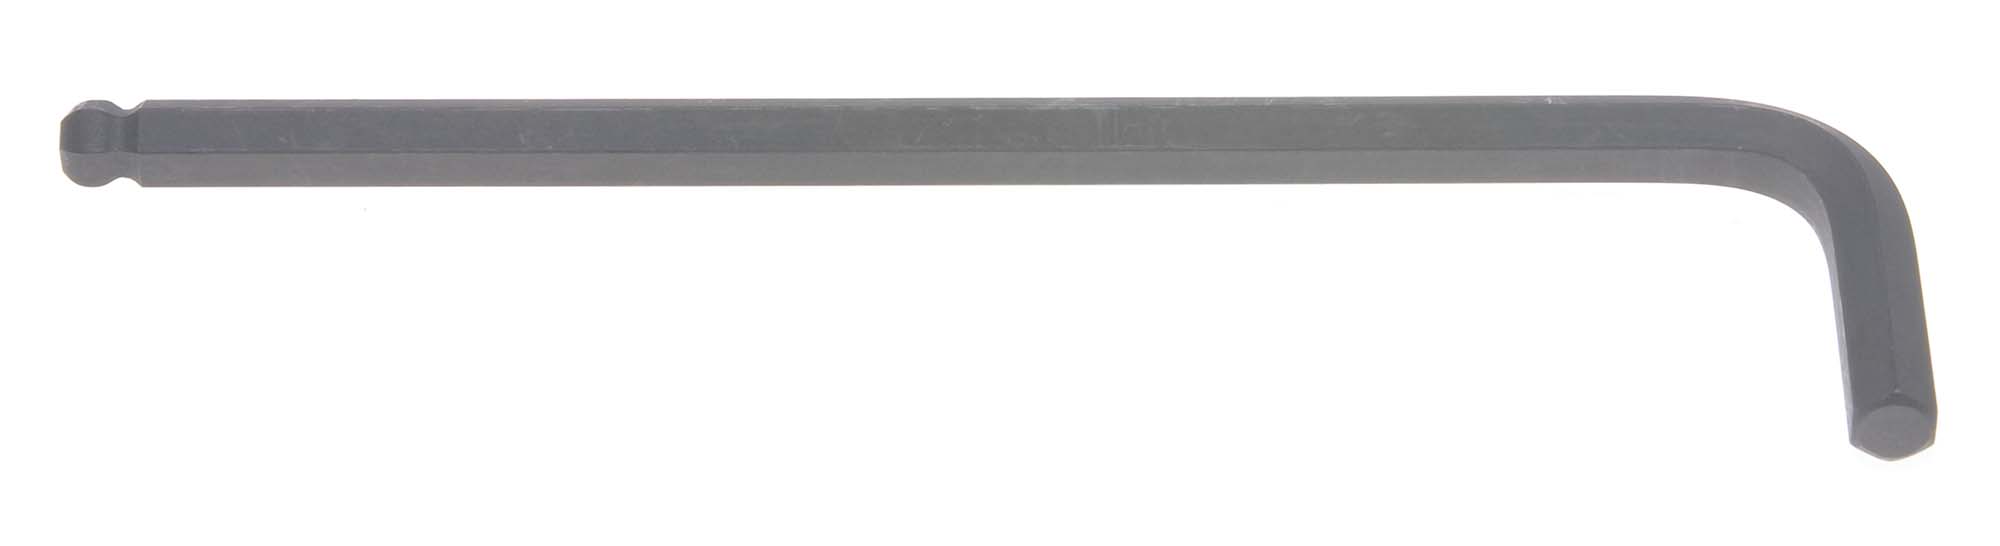 Bondhus 10962 4.5mm Balldriver L-Wrench Hex Key